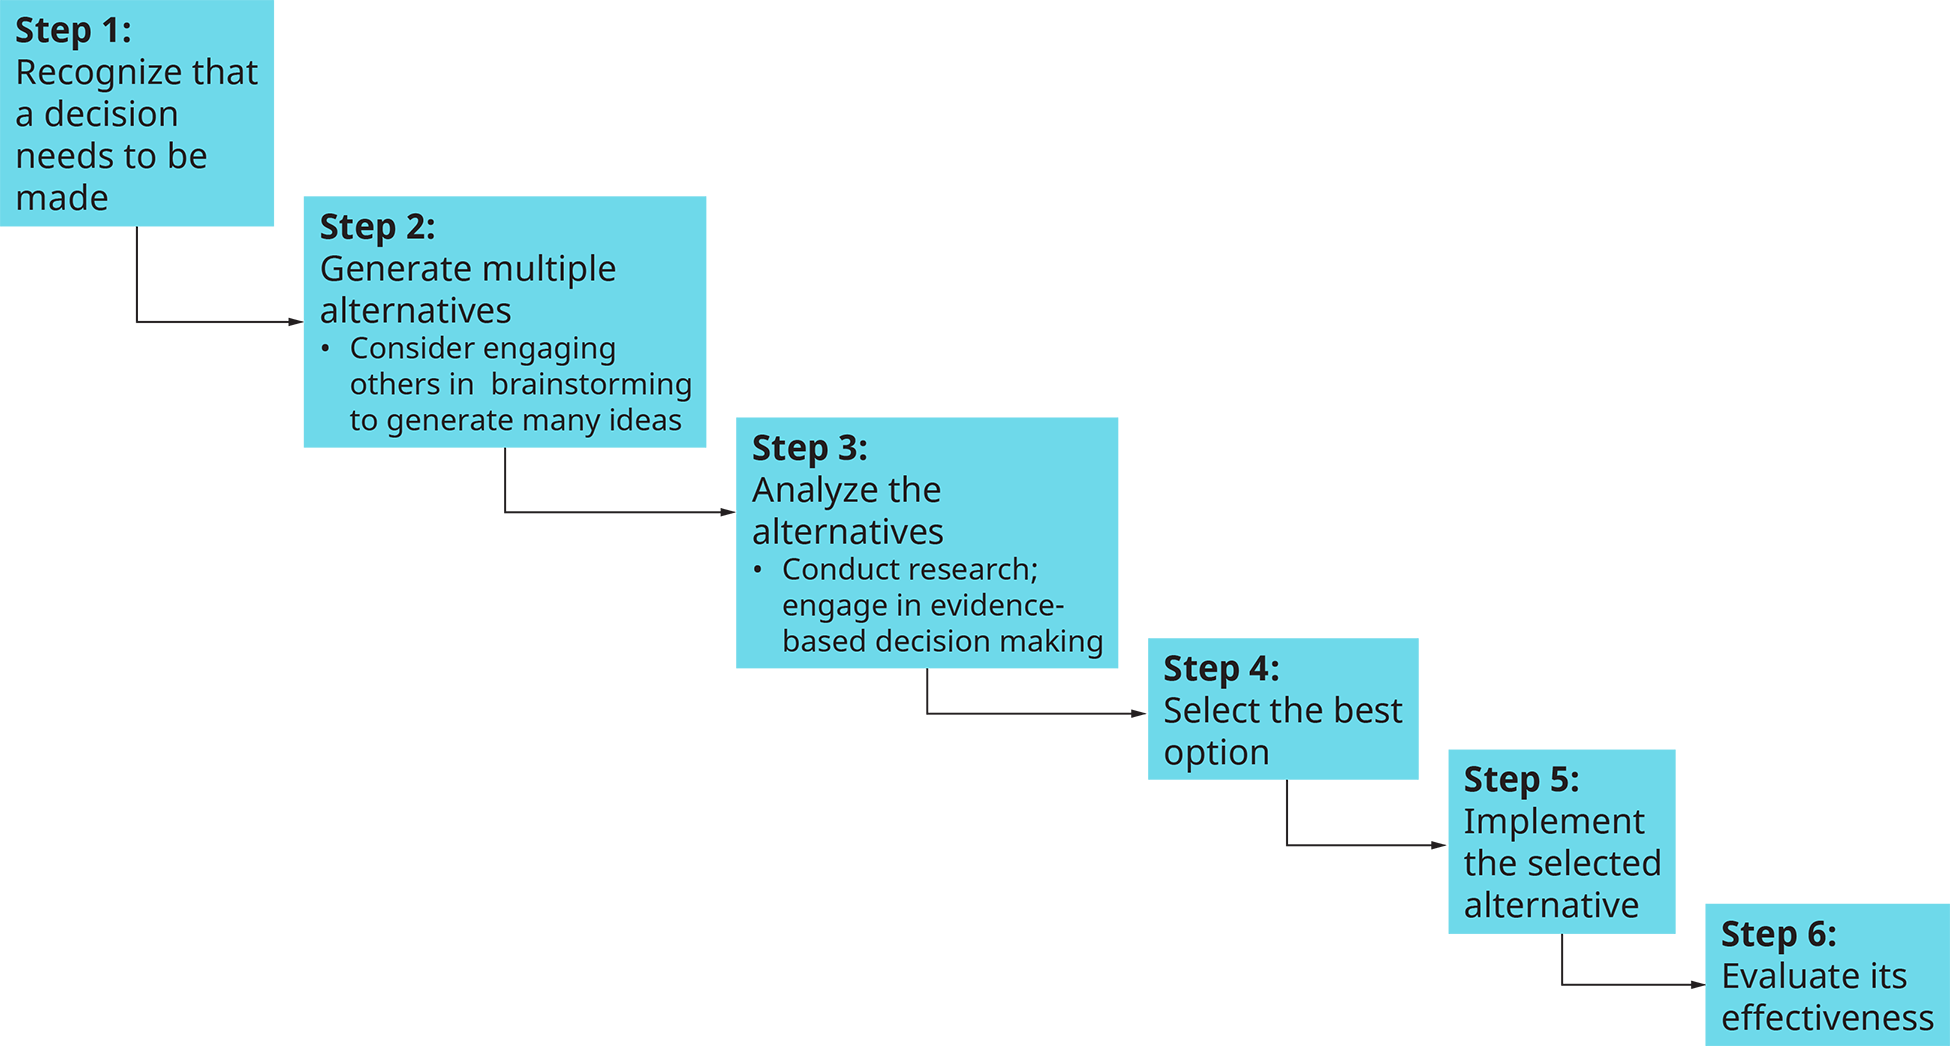 流程图显示了决策过程中的六个步骤。